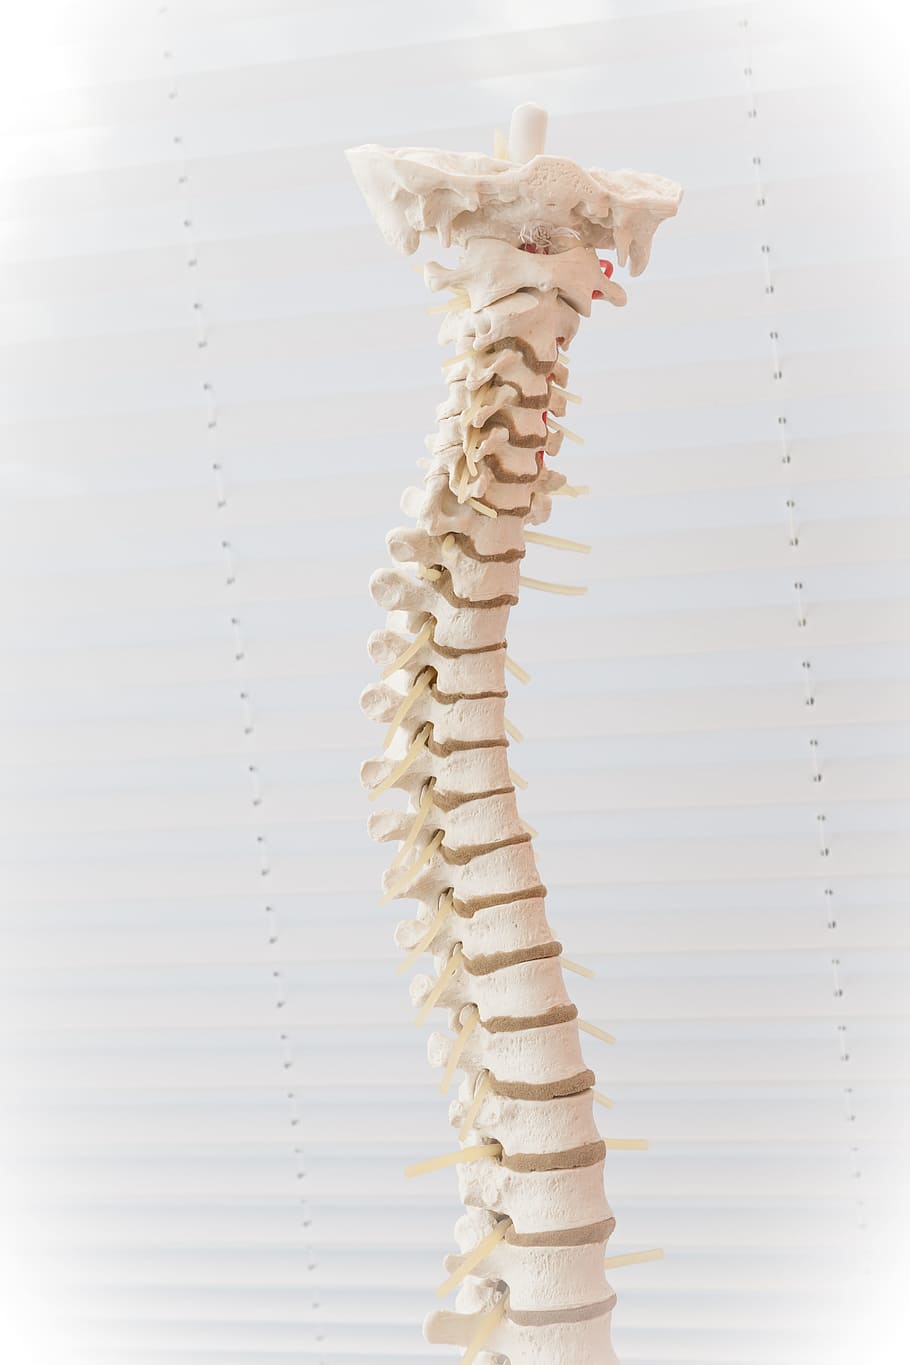 humano, decoración del hueso de la columna vertebral, columna vertebral, disco, movimiento, hernia de disco lumbar, enfermedad, médico, hueso, sanar